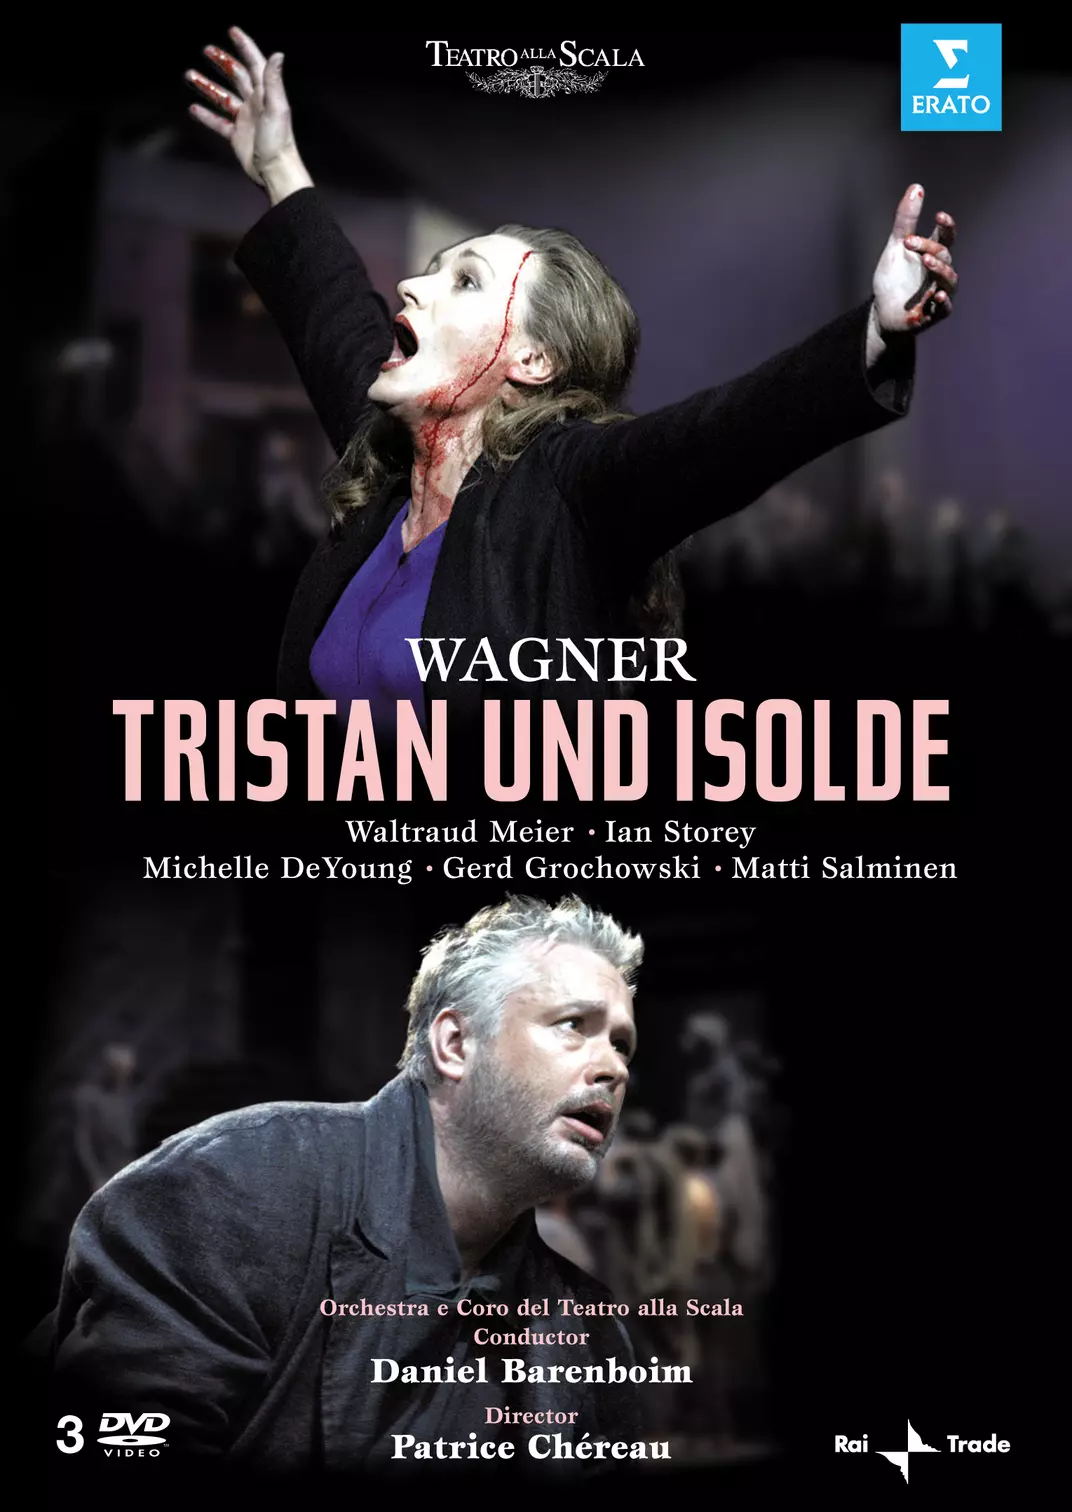 Wagner Tristan und Isolde (Waltraud Meier)